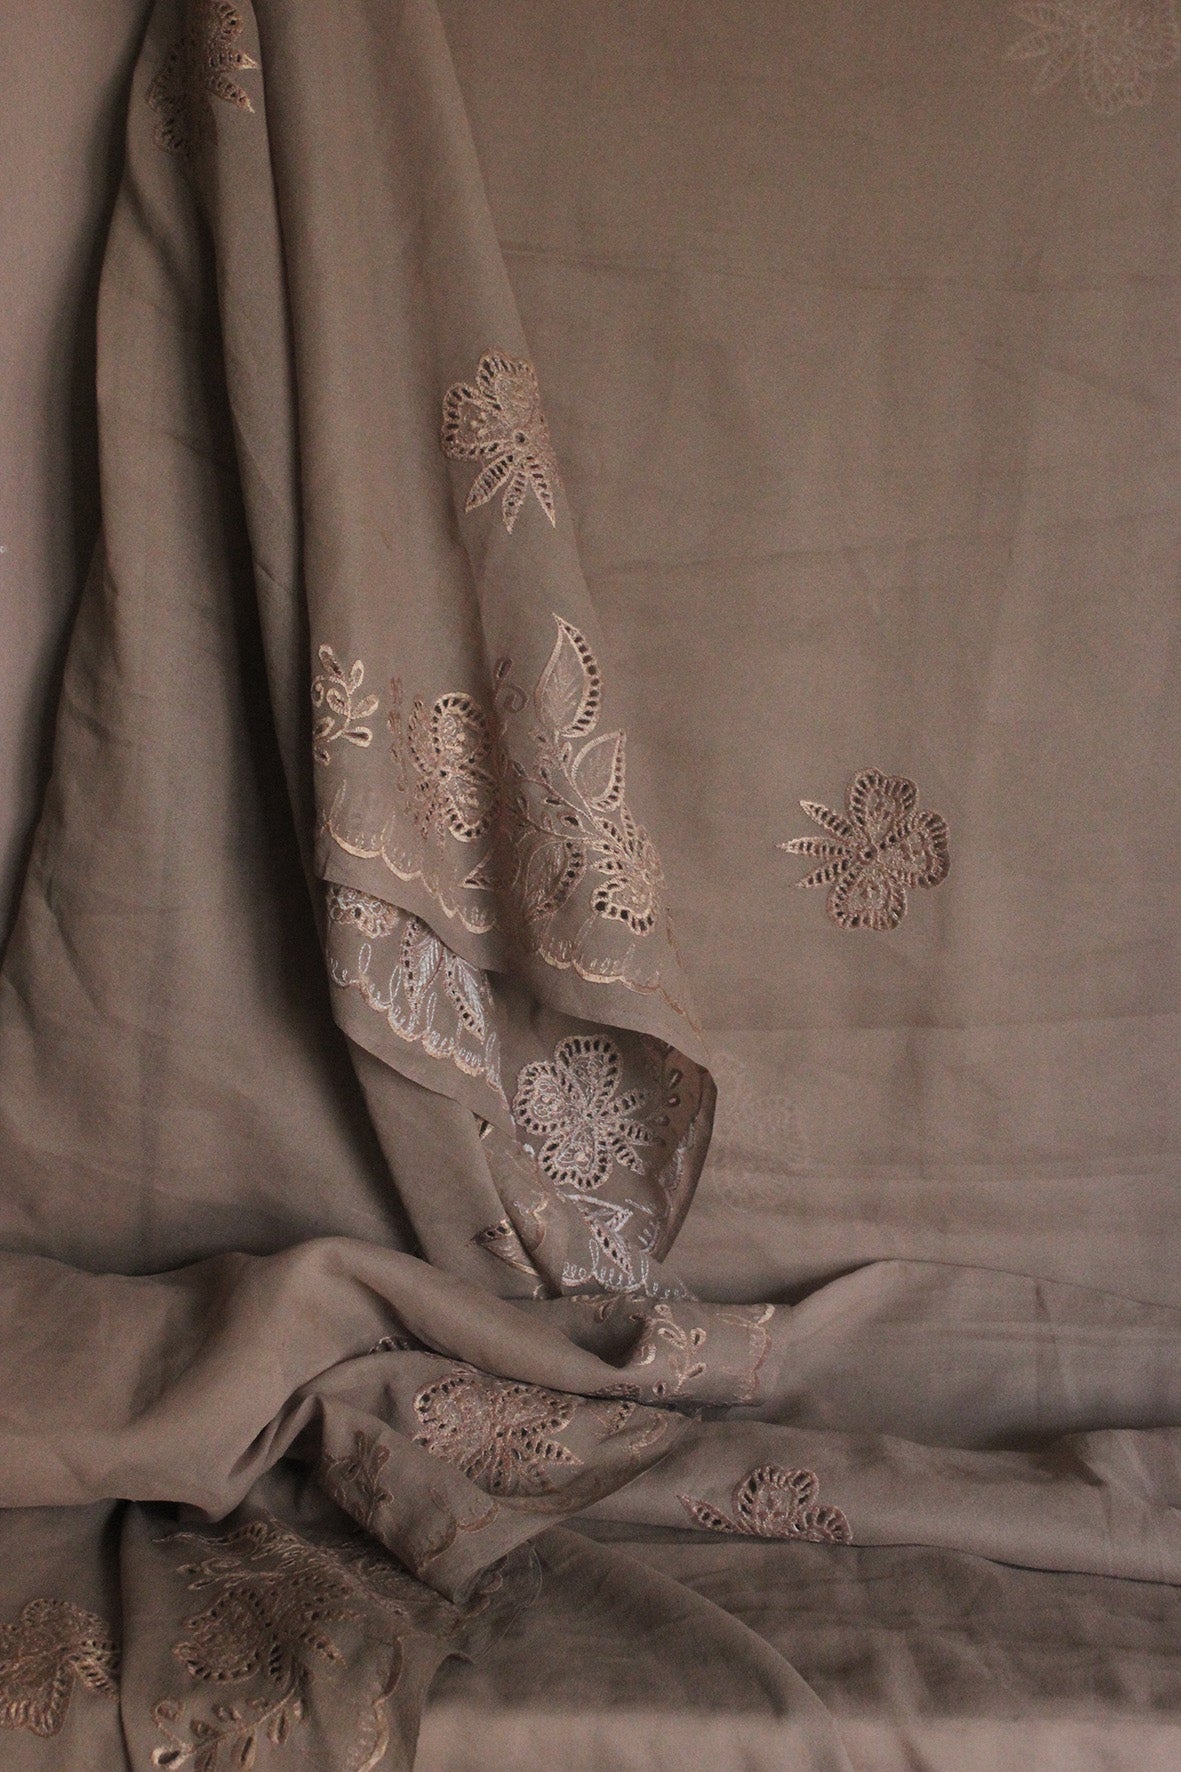 Vintage Embroidered Sari/Window Drape